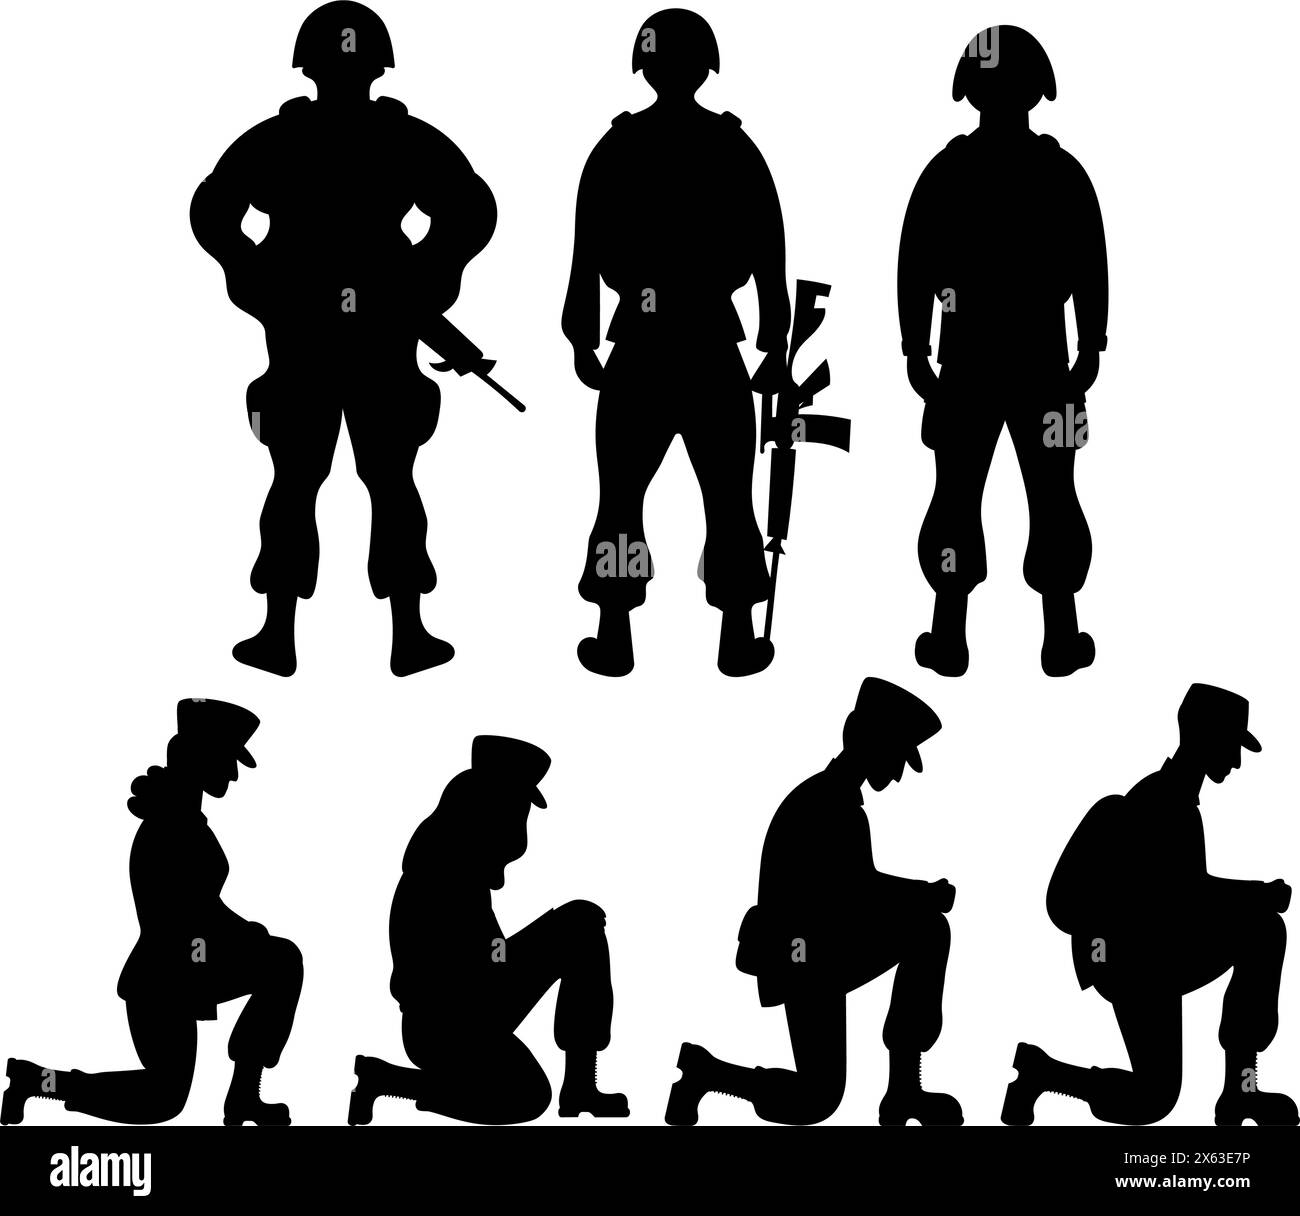 Militärangehörige Sammlung. Soldaten stehen mit Waffen auf dem Rücken und Krieger stehen auf einem Knie. Isolierte schwarze Zeichnungen Silho Stock Vektor